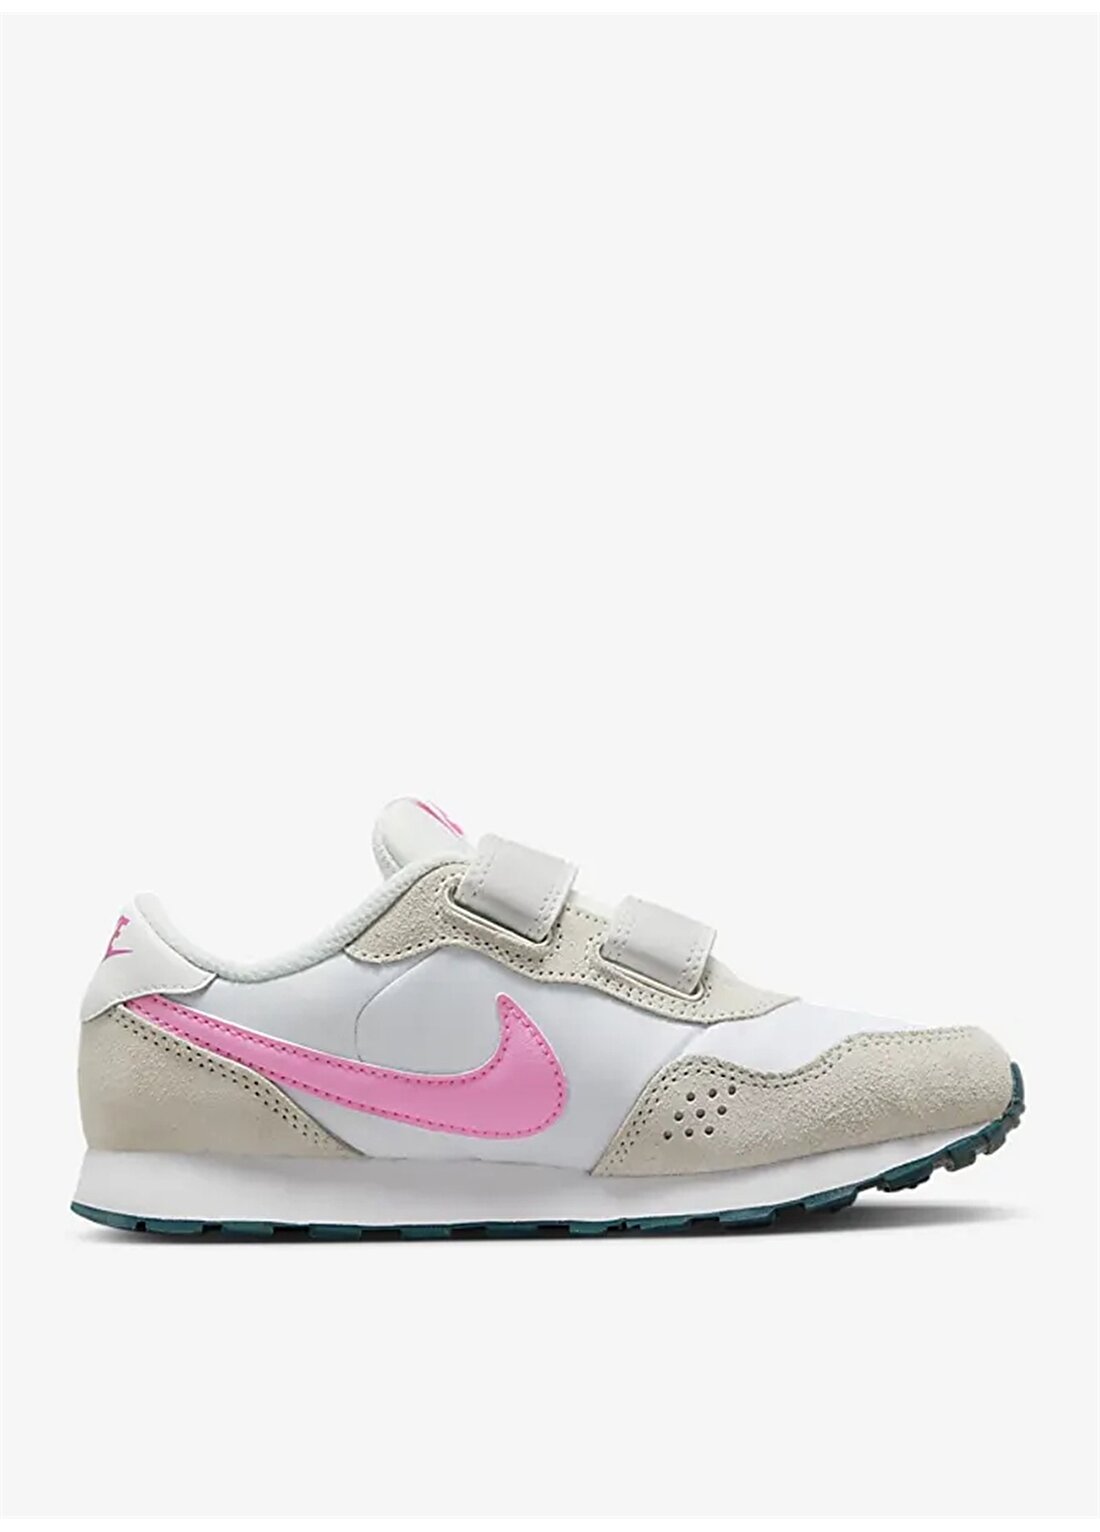 Nike Beyaz Kız Çocuk Yürüyüş Ayakkabısı CN8559-111 NIKE MD VALIANT (PSV)